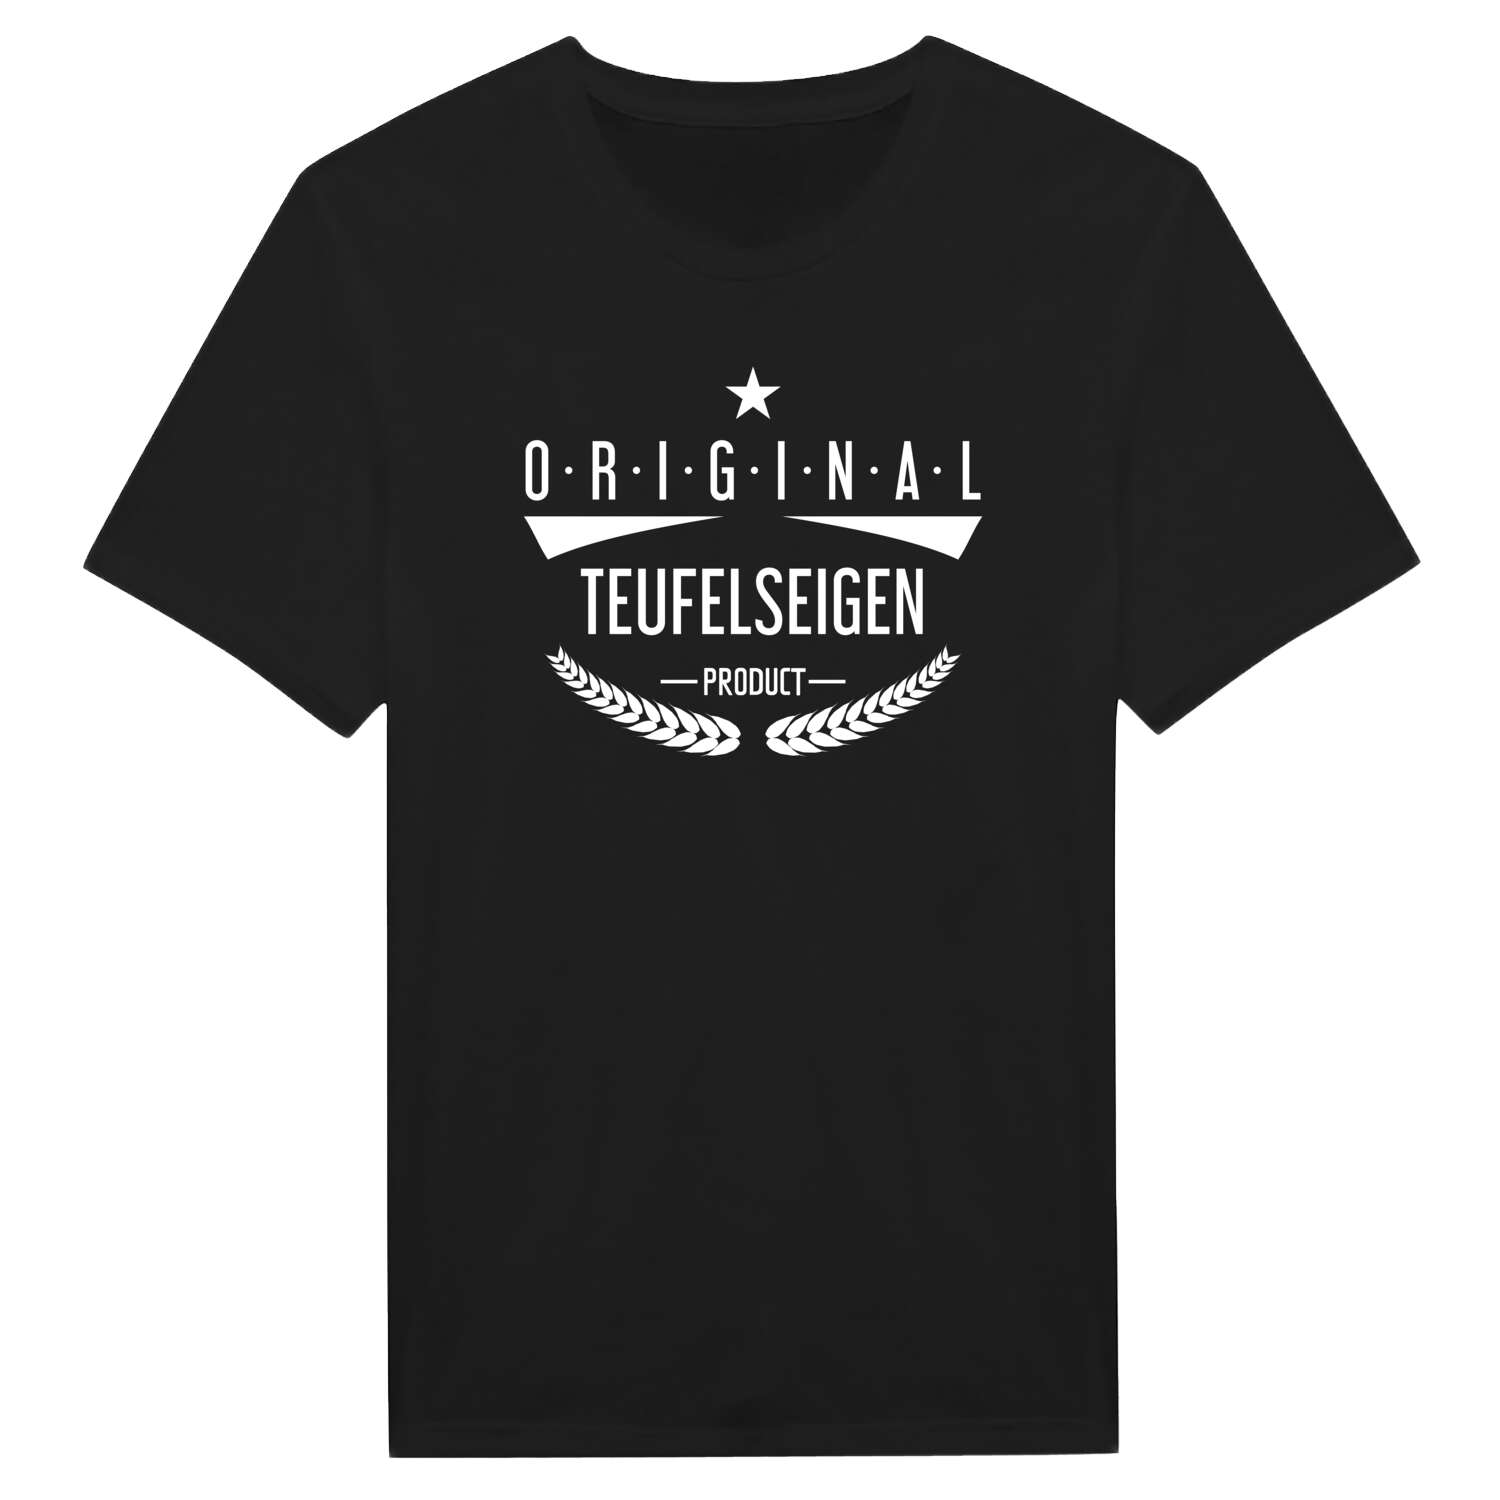 Teufelseigen T-Shirt »Original Product«